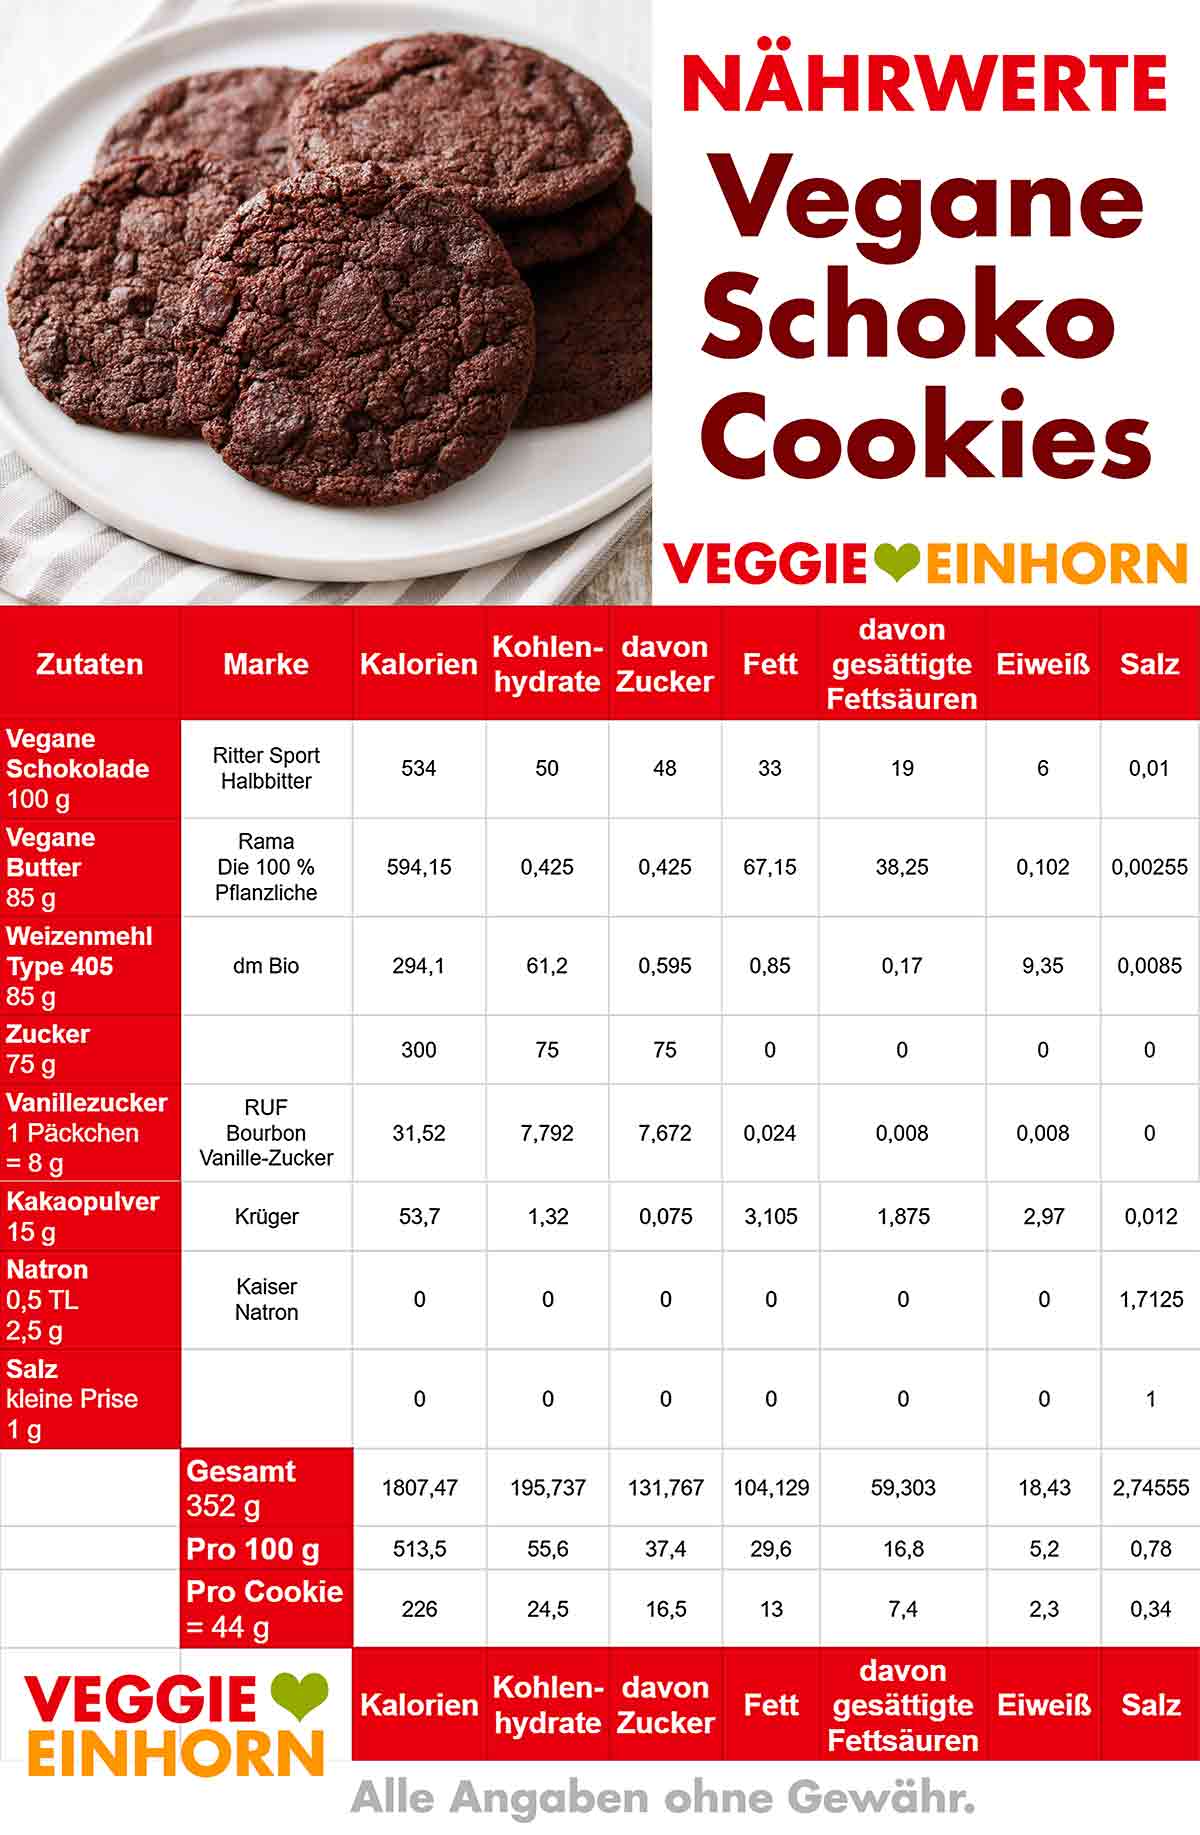 Kalorien von veganen Schoko Cookies